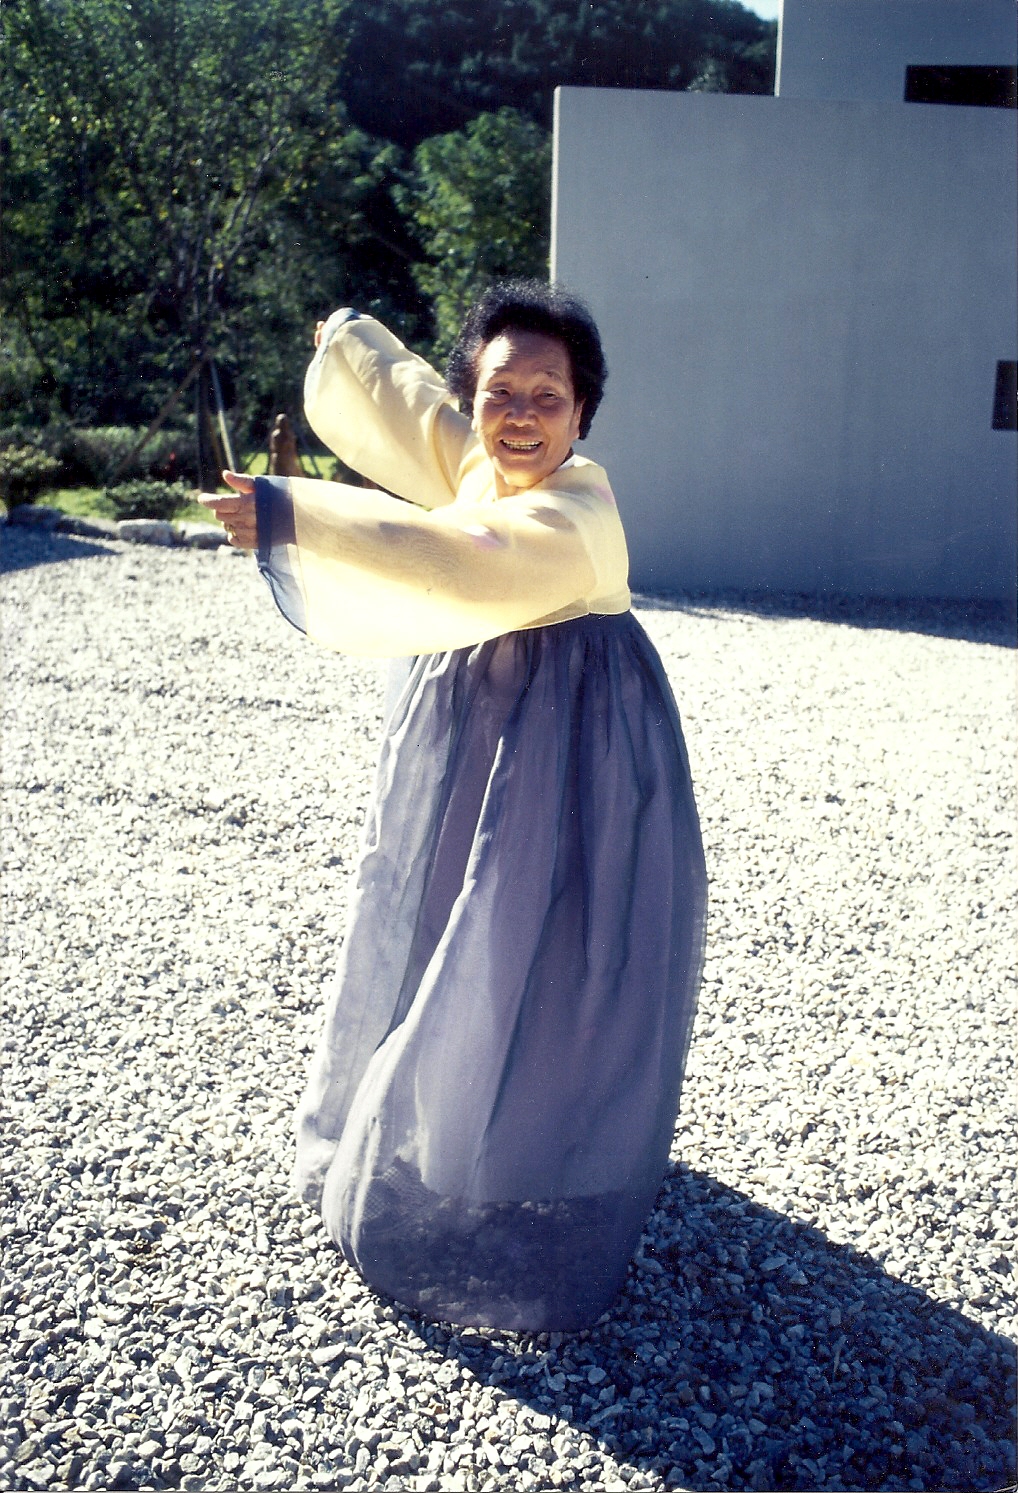  1998년 나눔의집에 방문한 송신도가 김순덕의 한복을 빌려입고 신이 나 나눔의집 마당에서 전통 춤사위를 선보이고 있다. ⓒ가와타 후미코.